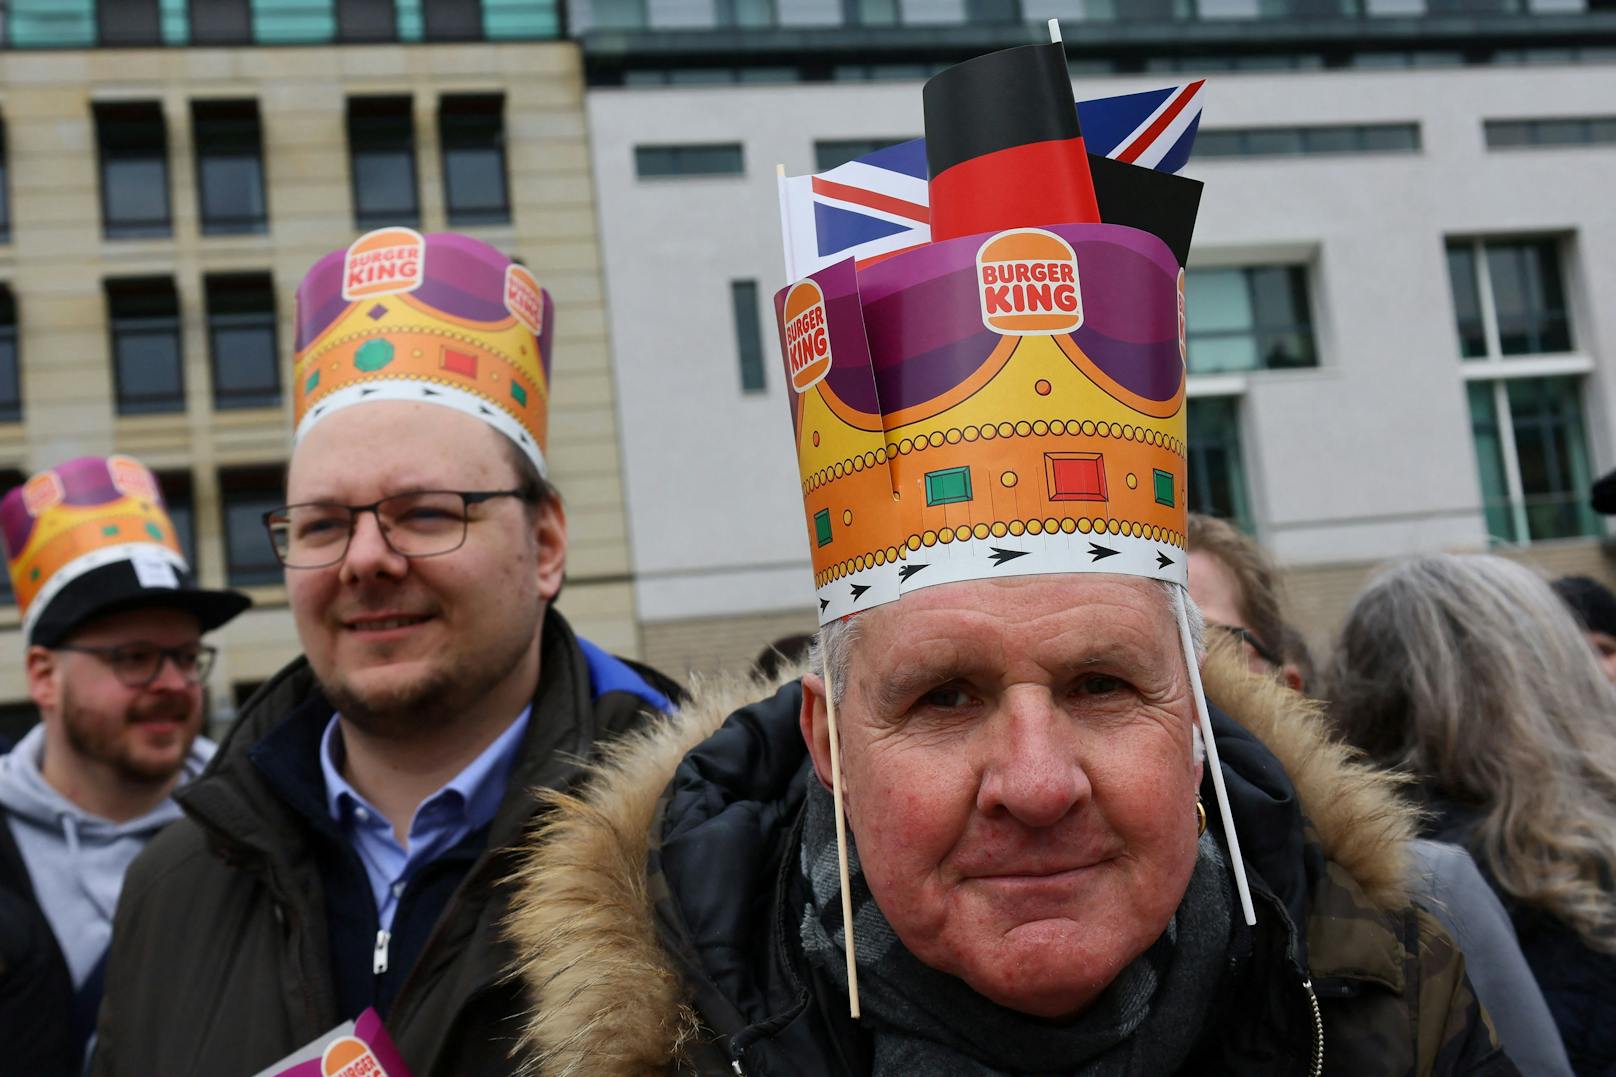 Die Leute vor Ort haben sich extra hübsch gemacht für den britischen König. Etliche trugen Kronen von "Burger King".